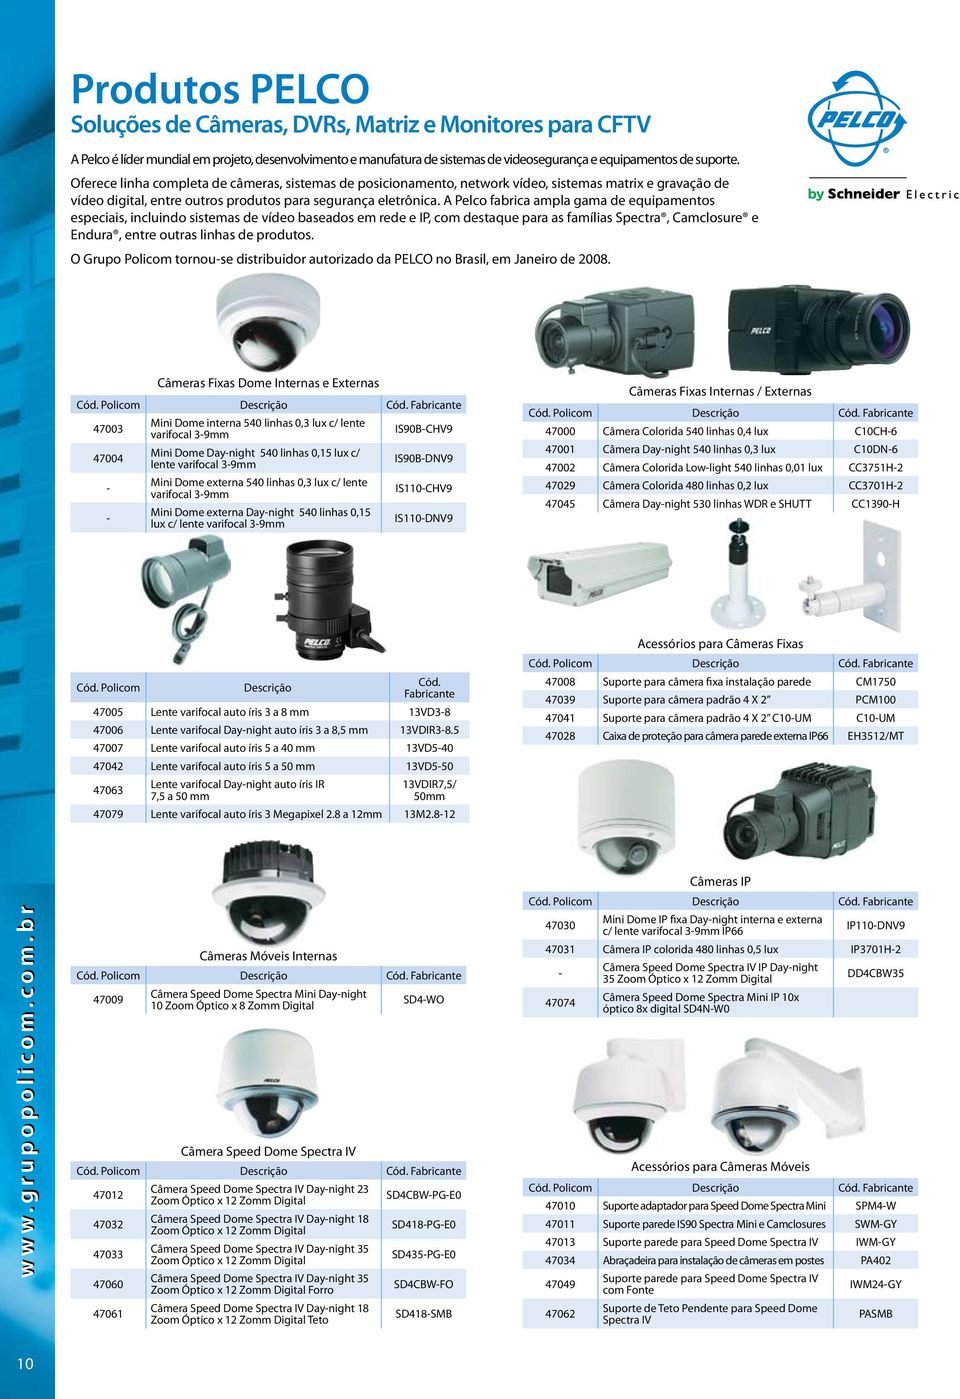 A Pelco fabrica ampla gama de equipamentos especiais, incluindo sistemas de vídeo baseados em rede e IP, com destaque para as famílias Spectra, Camclosure e Endura, entre outras linhas de produtos.